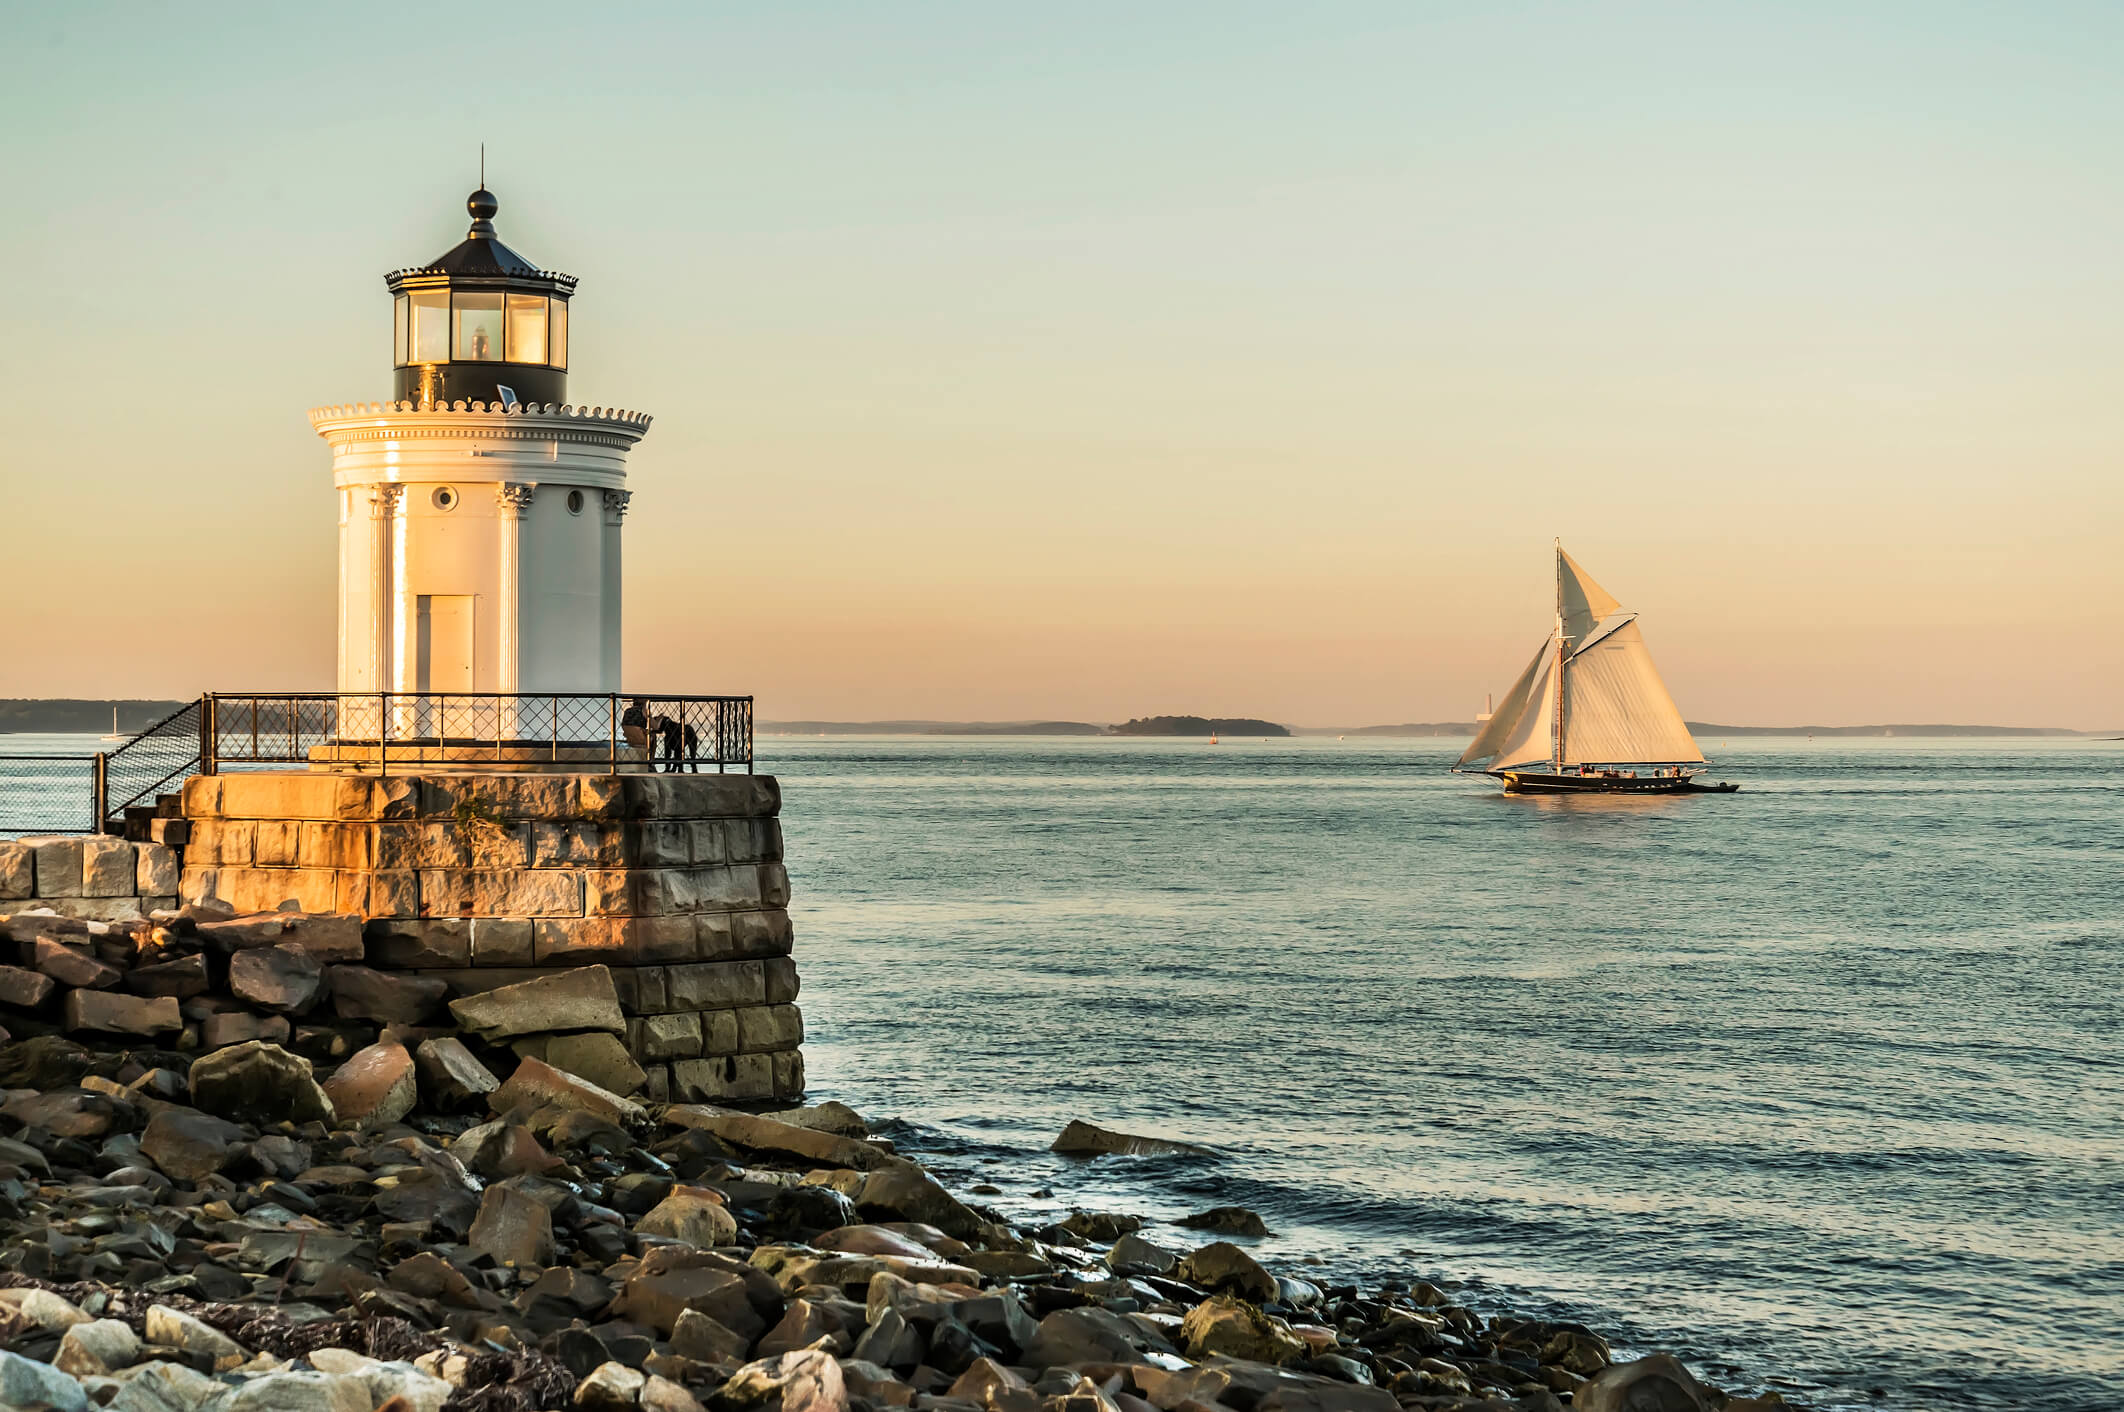 Maine lighthouse